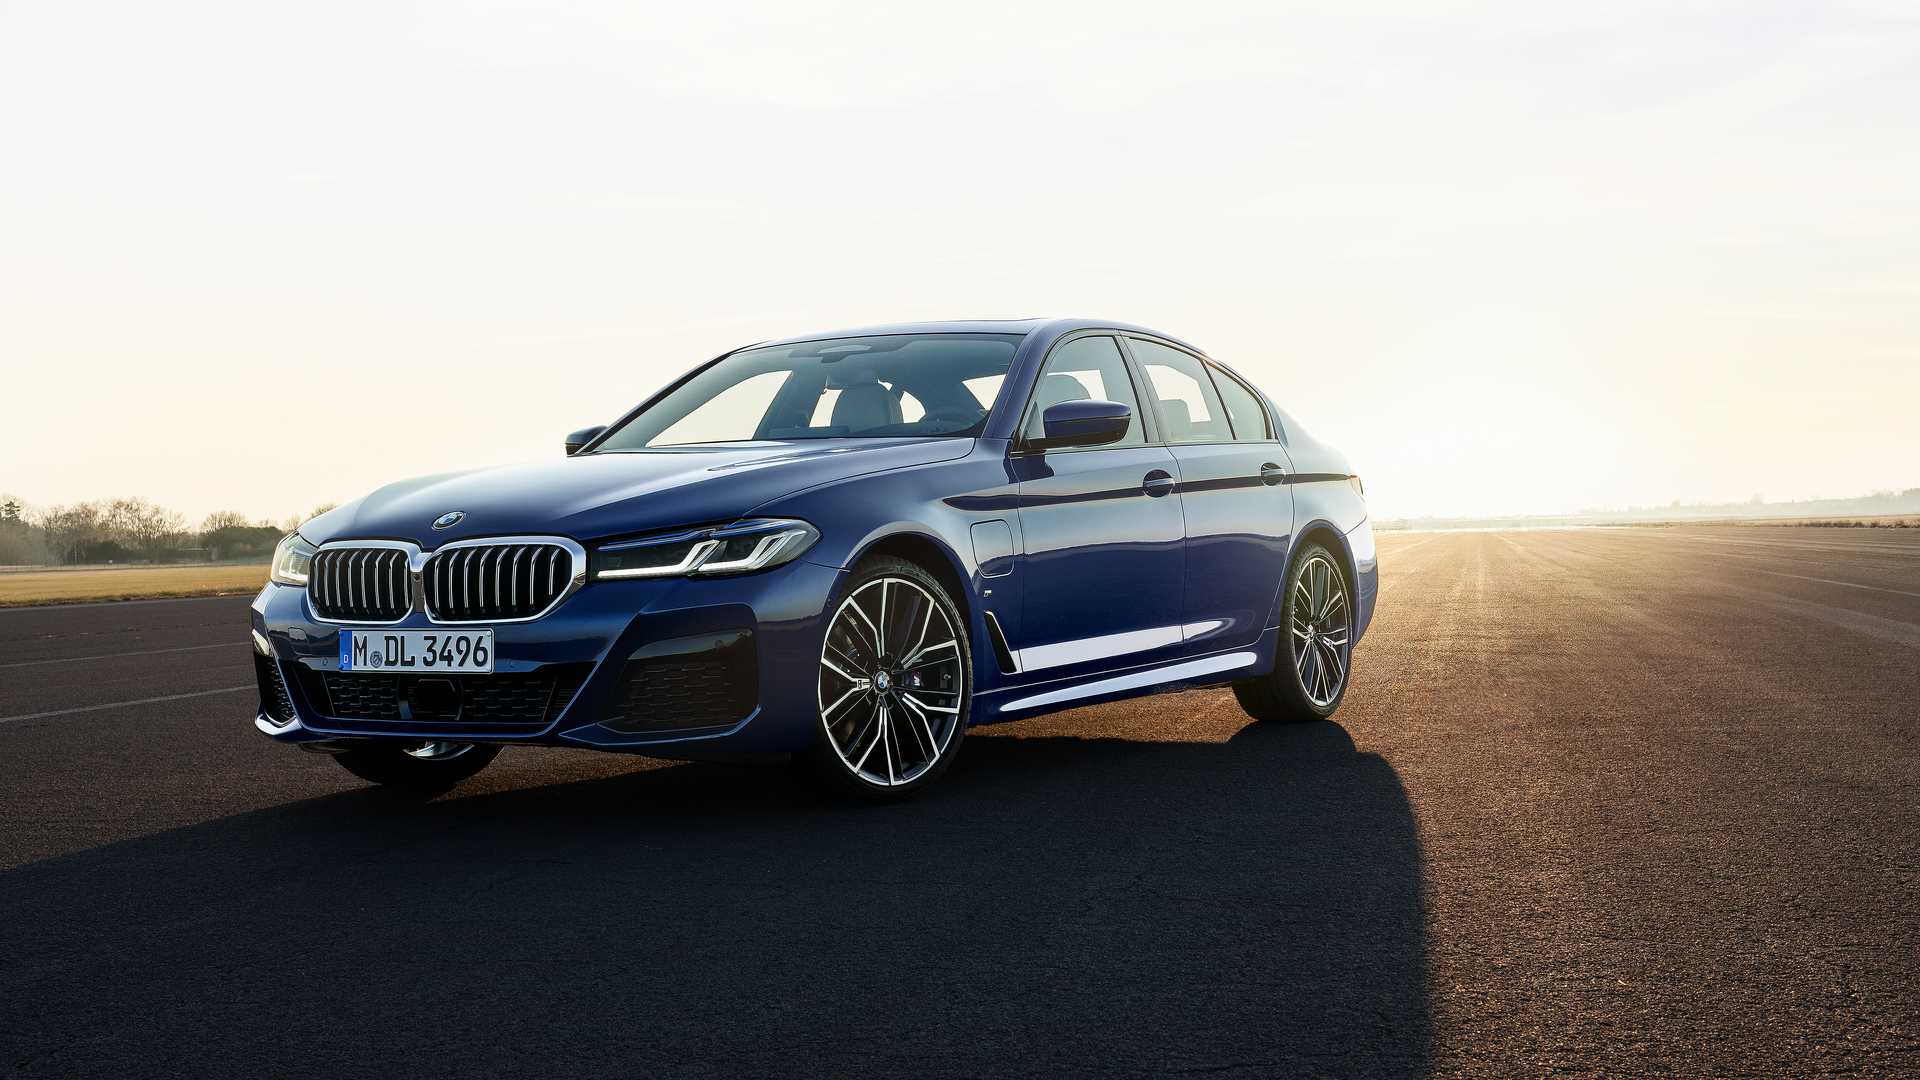 Lifting et motorisations hybrides pour les BMW série 5 et 6 GT